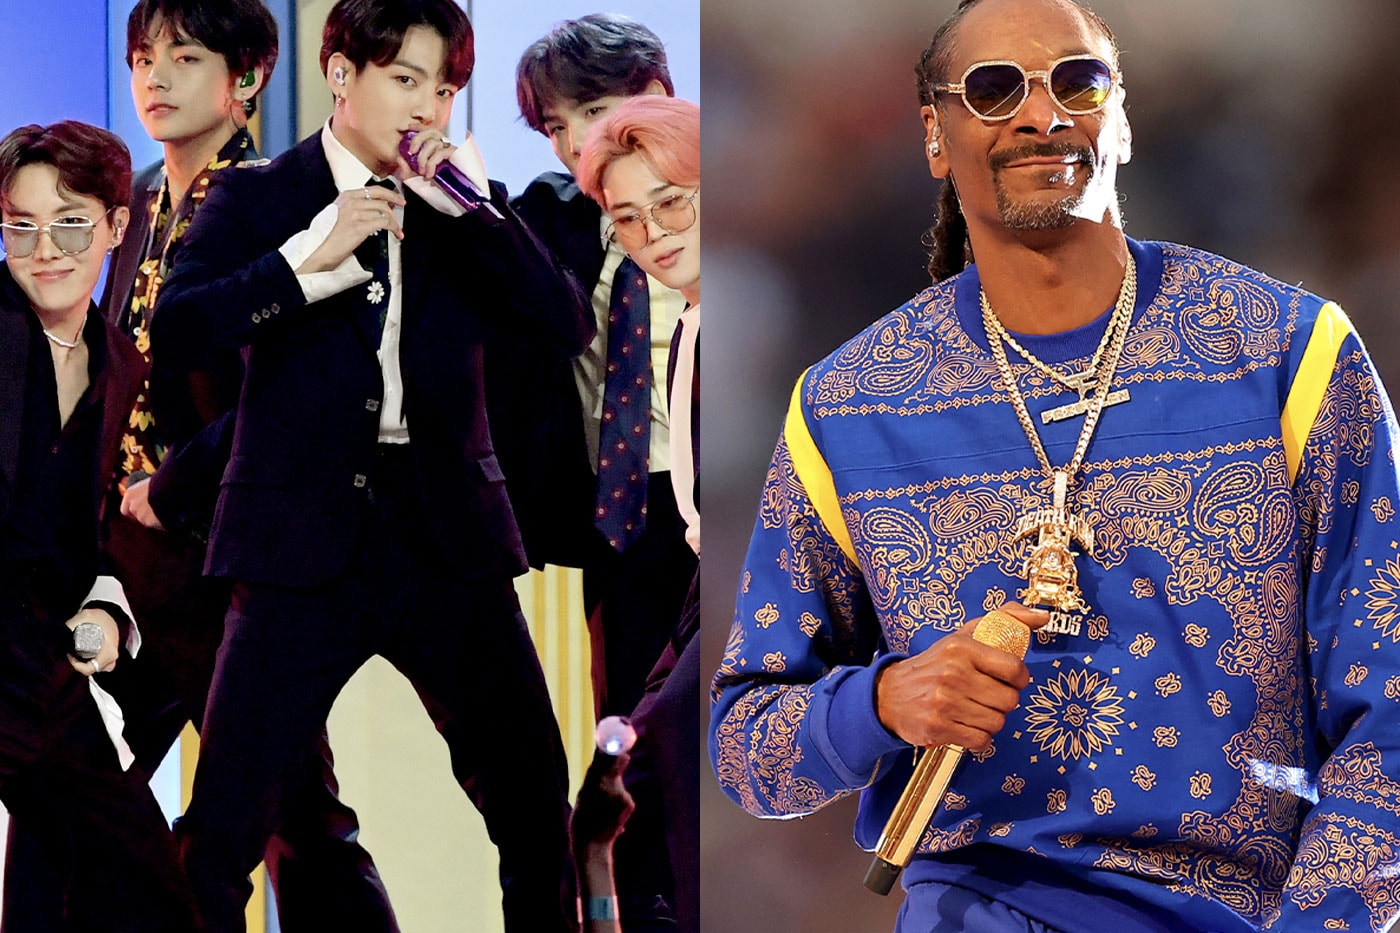 スヌープ・ドッグが BTS とのコラボレーションを予告 Snoop Dogg Confirms Official Collaboration With BTS on Upcoming Song kpop jimin j-hope rm v suga jungkookg weed california death row records amreican song contest